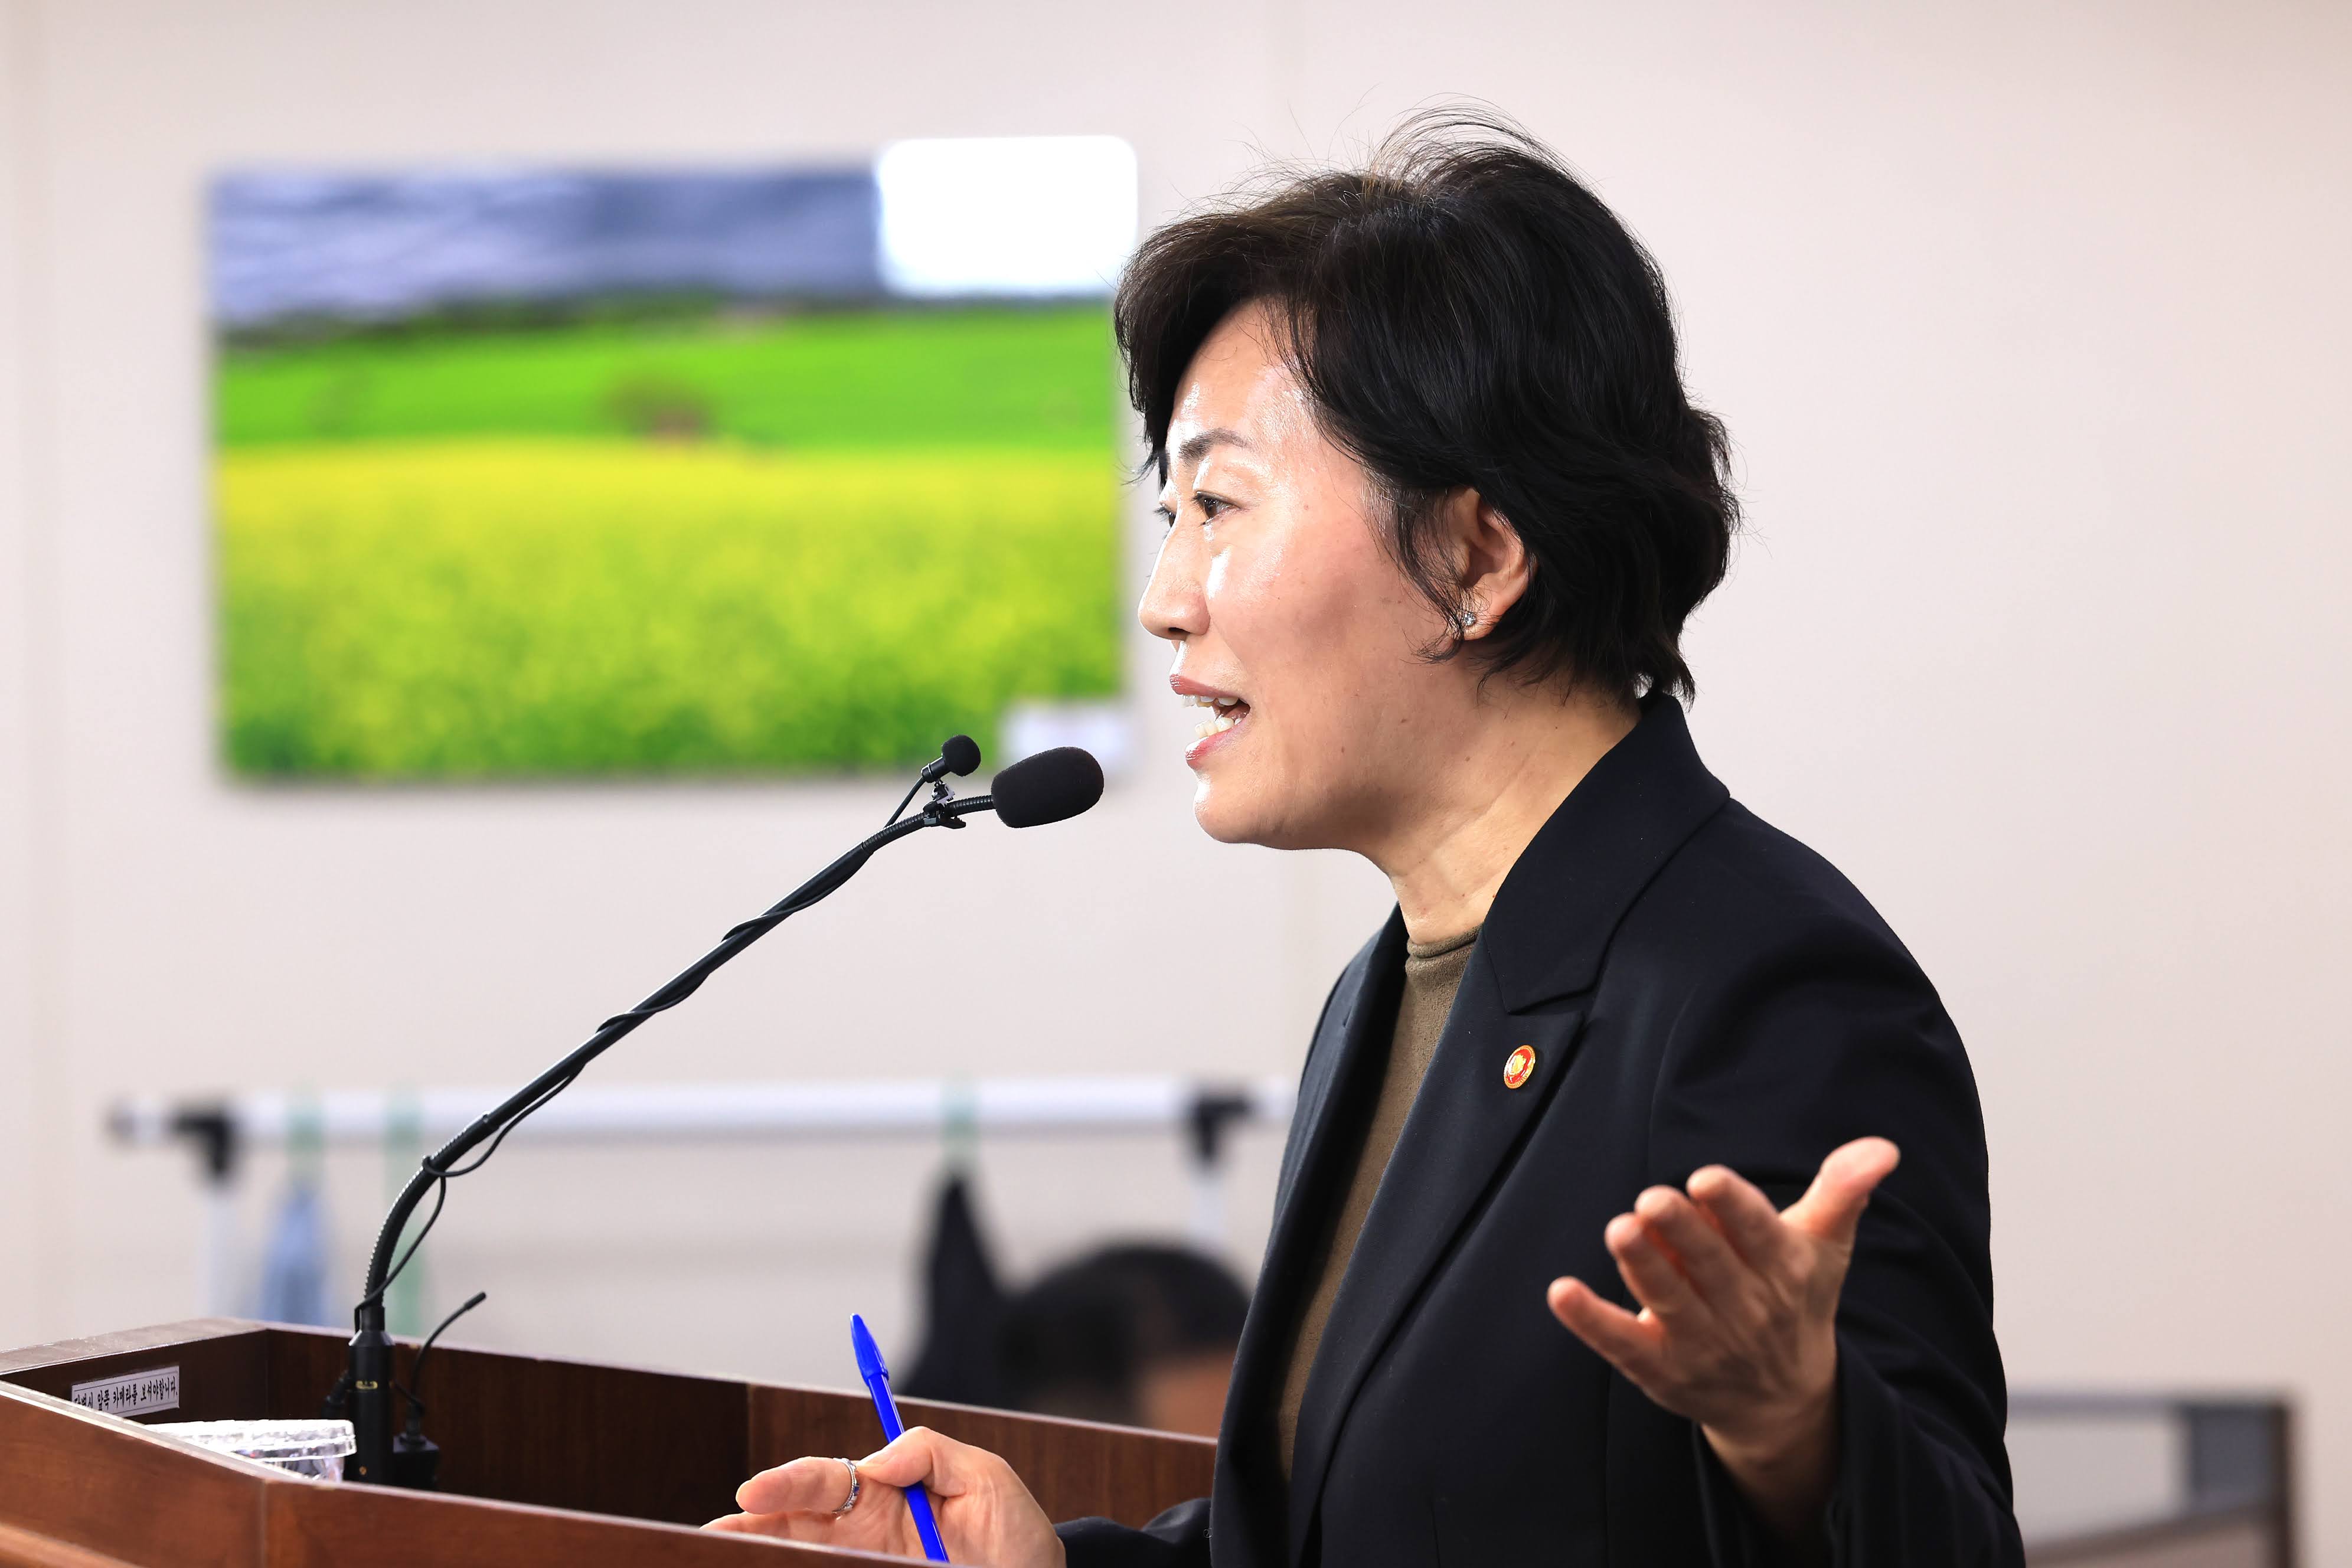 송미령 장관, “농촌소멸 대응 추진전략” 발표